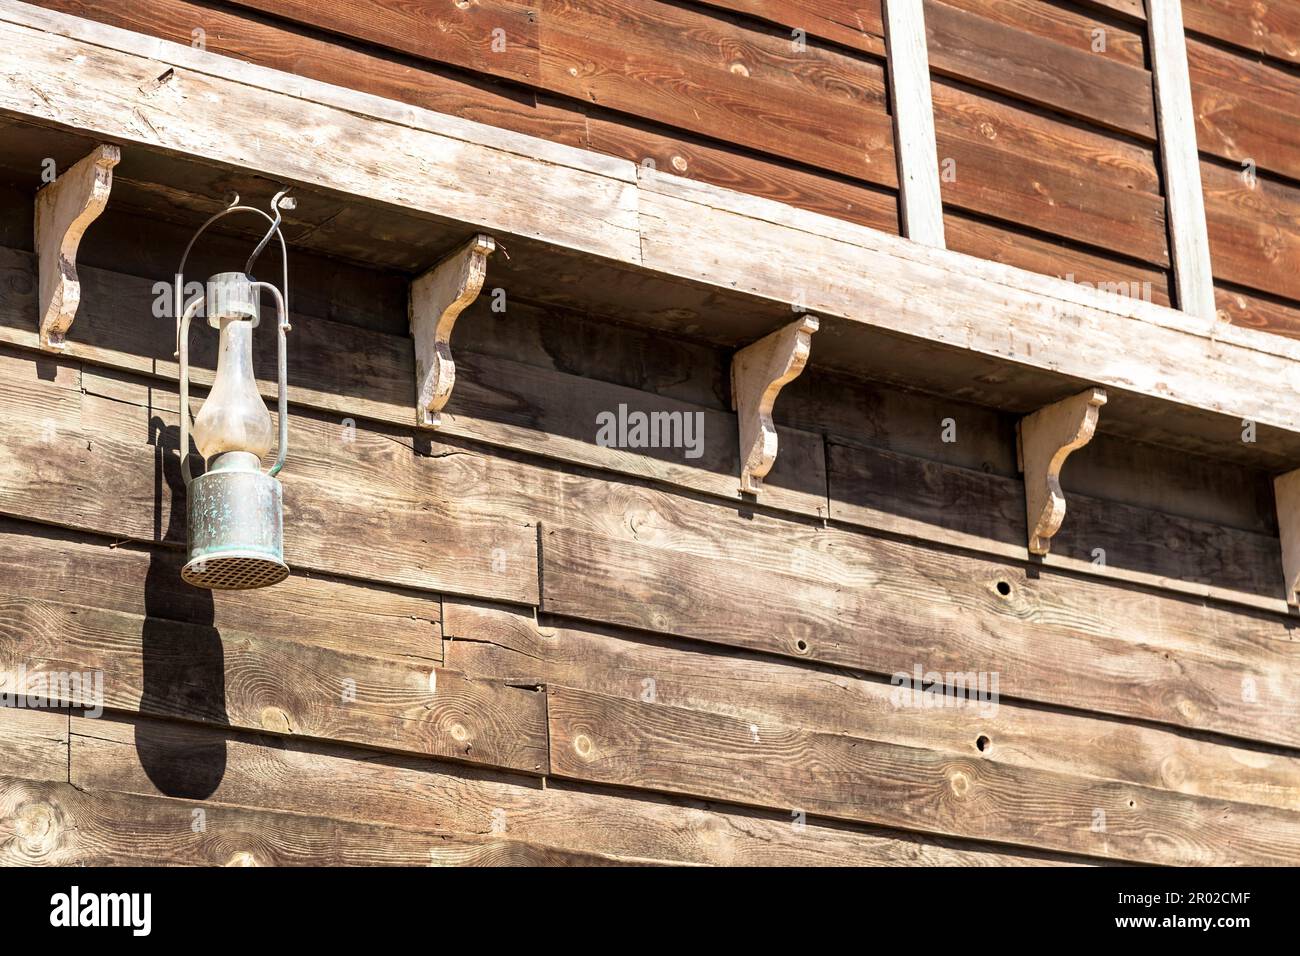 Lampe à huile ancienne sur un mur de la maison en bois Banque D'Images